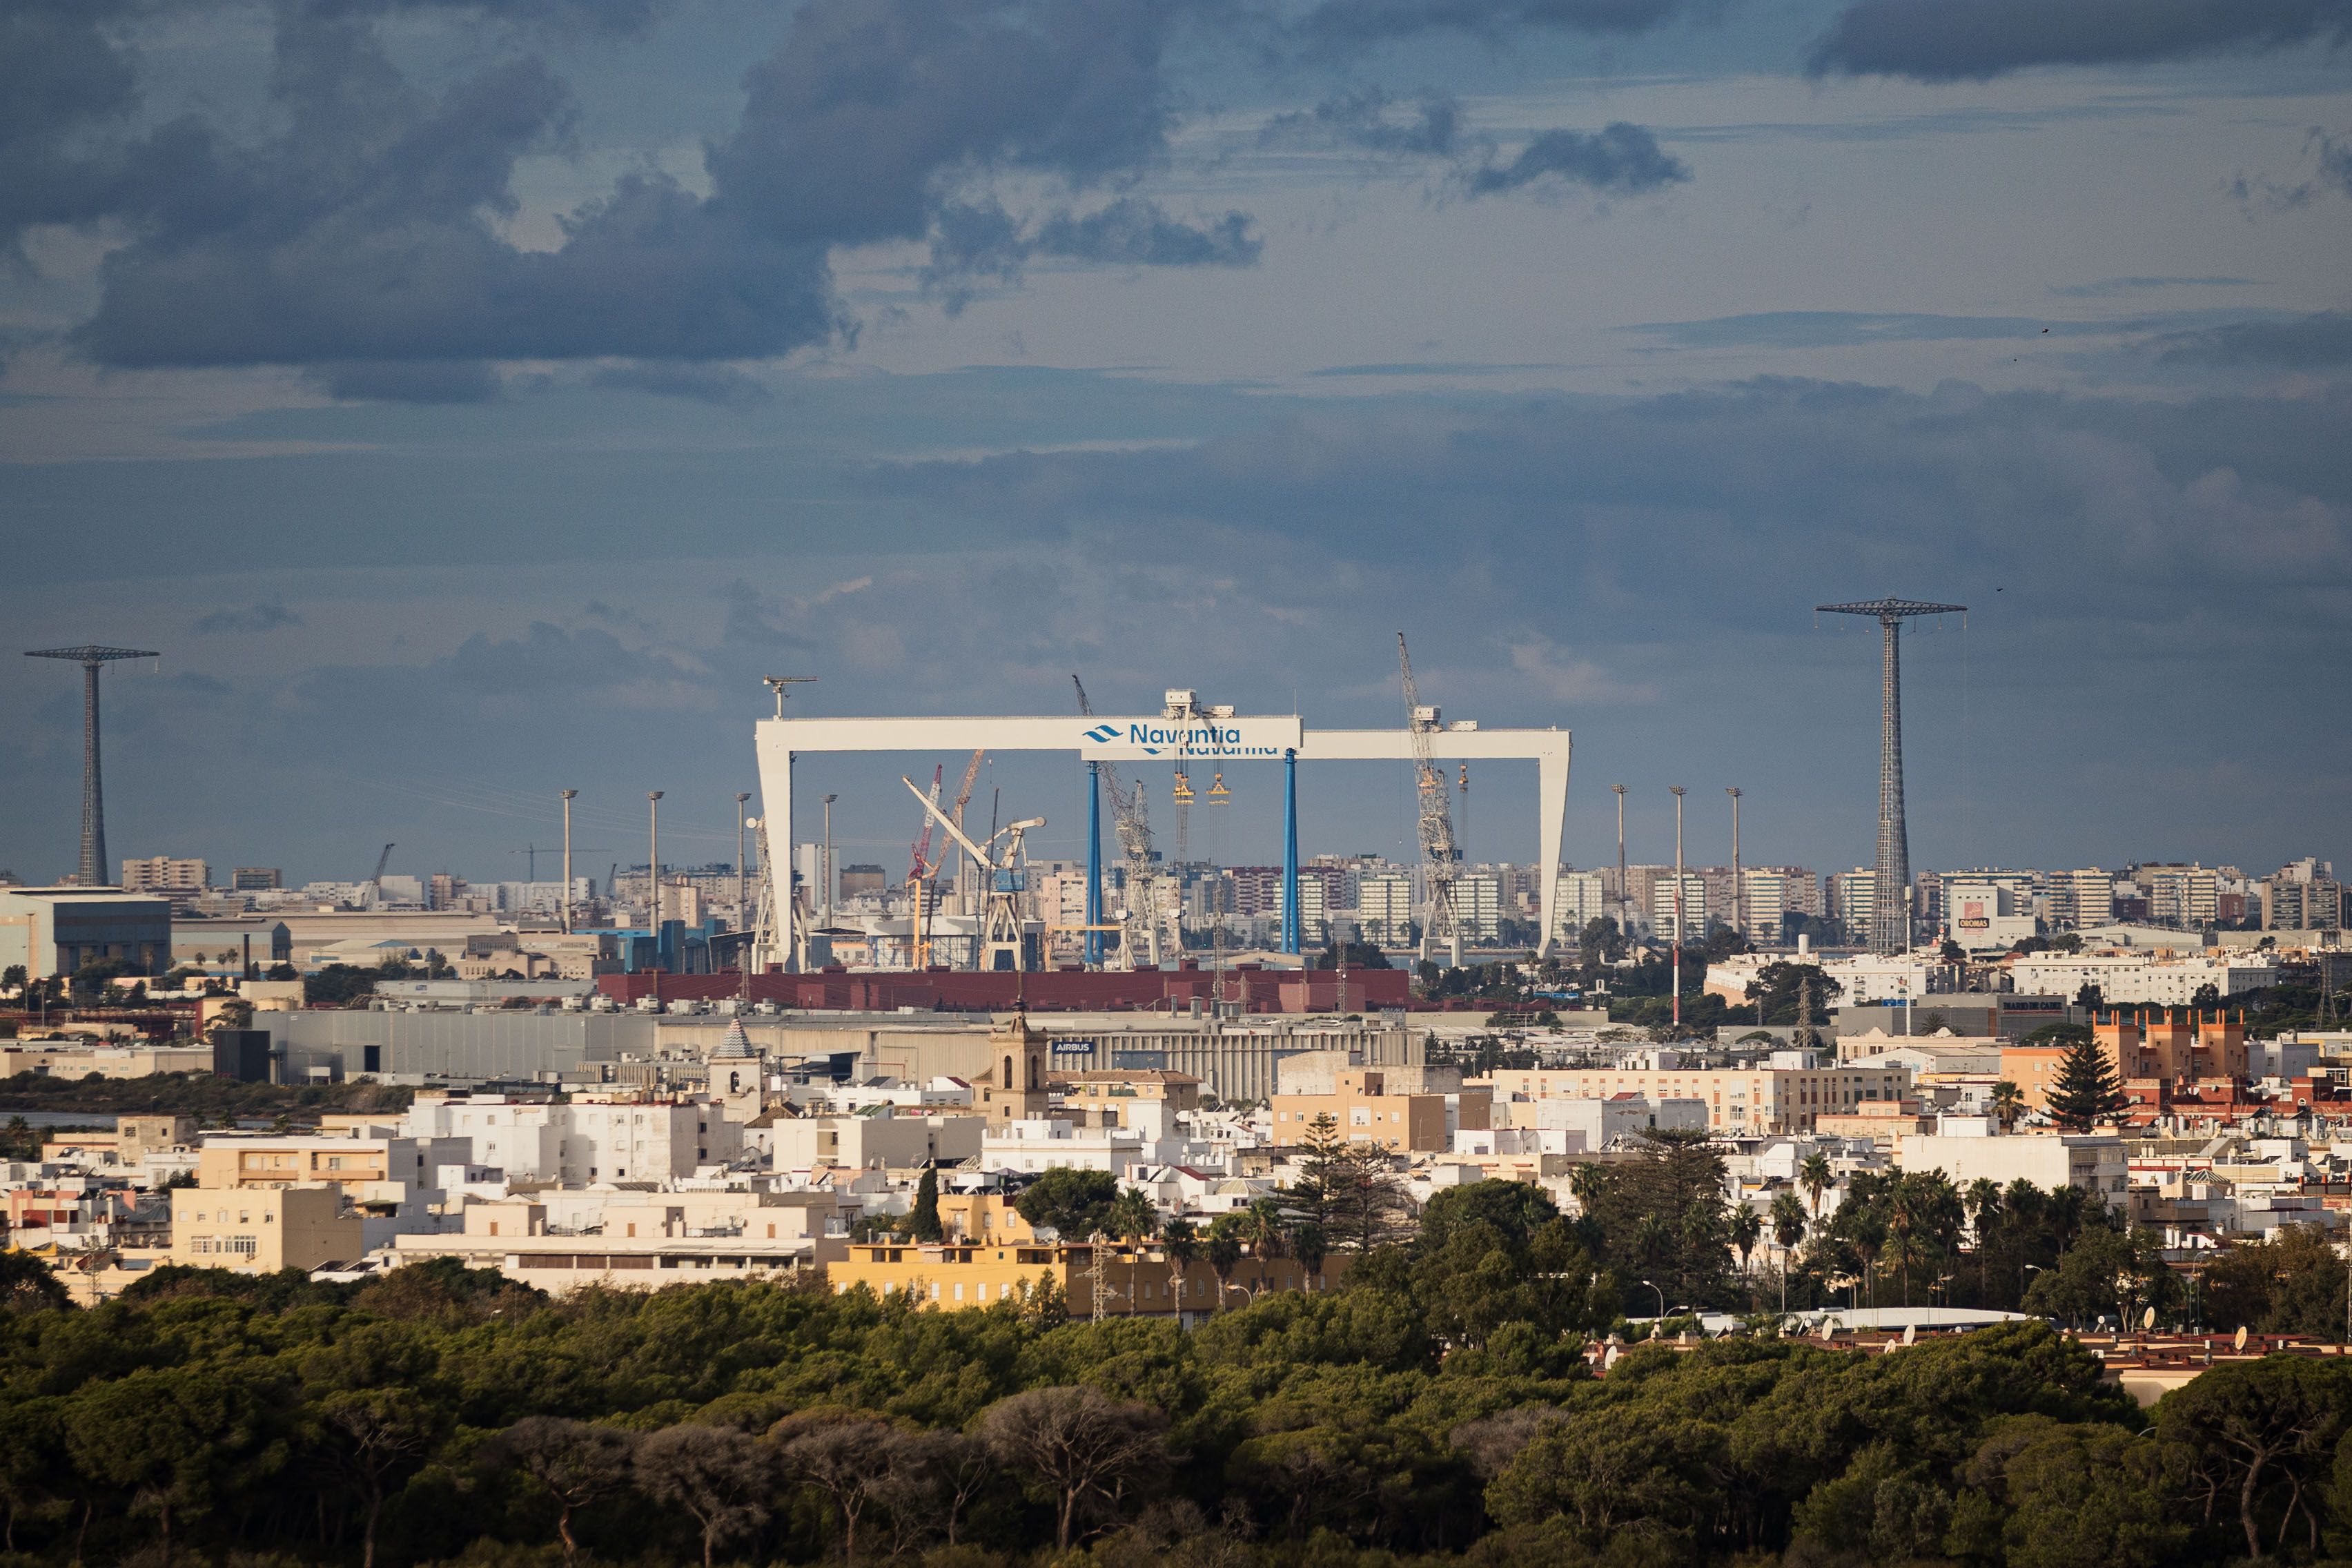 Vista del astillero de Navantia en la Bahía de Cádiz, en una imagen reciente.